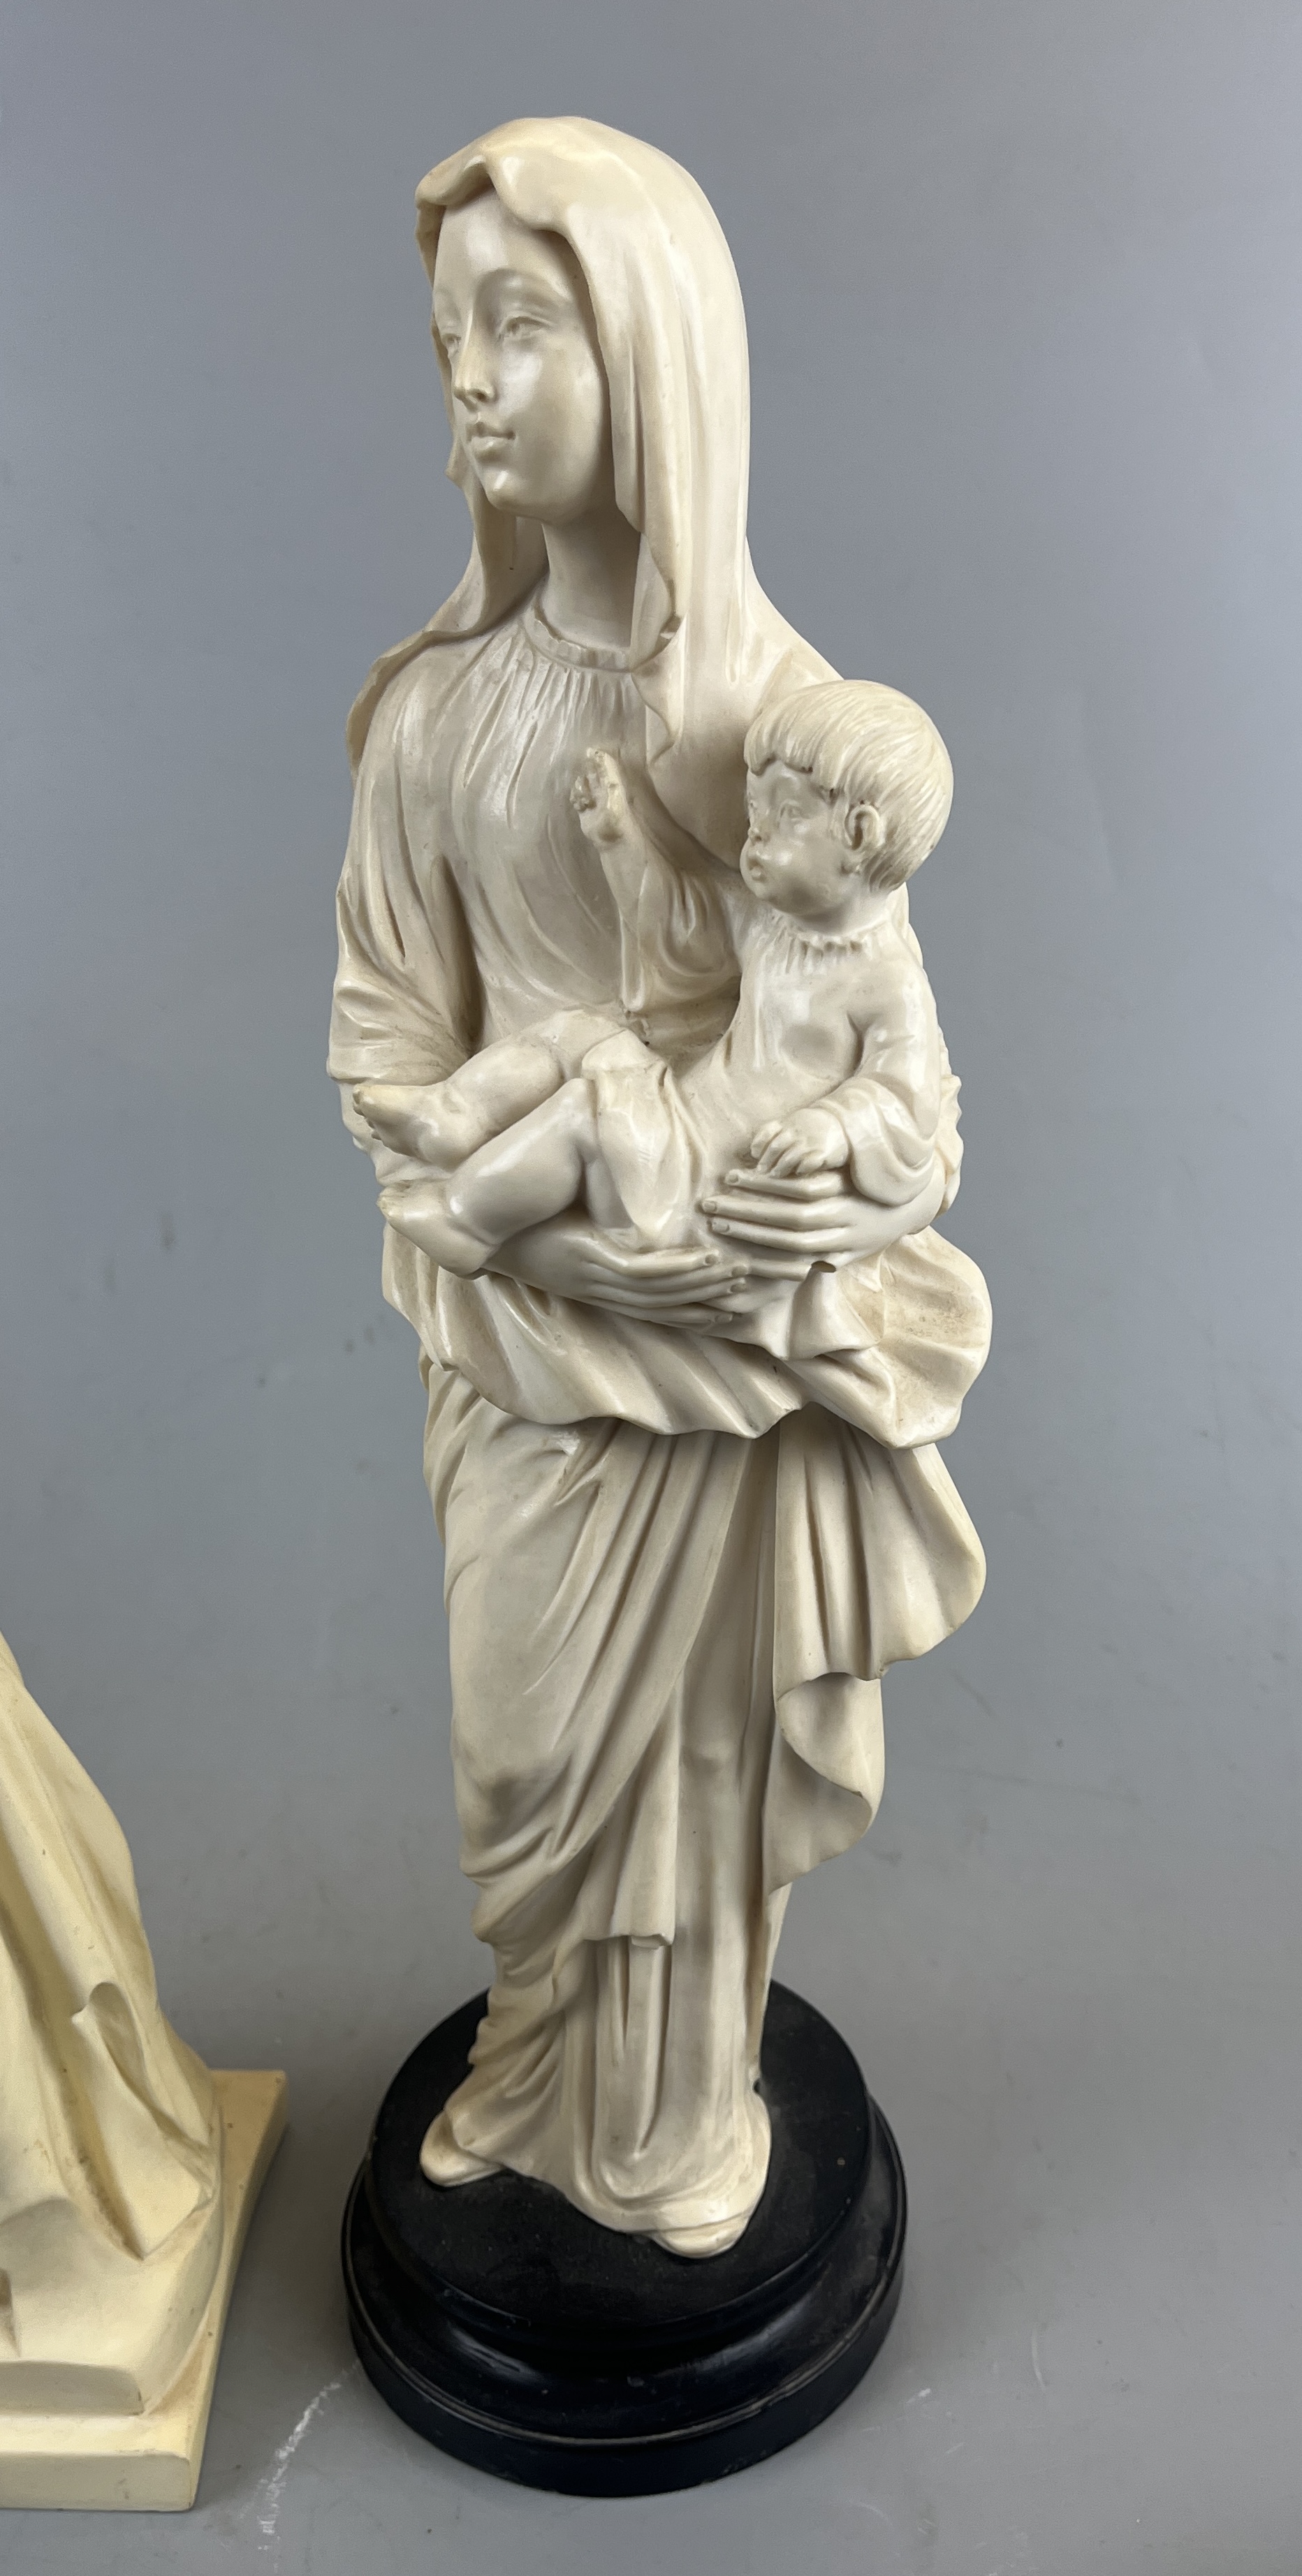 2 Virgin Marys together with a Venus de Milo figure - Image 6 of 6